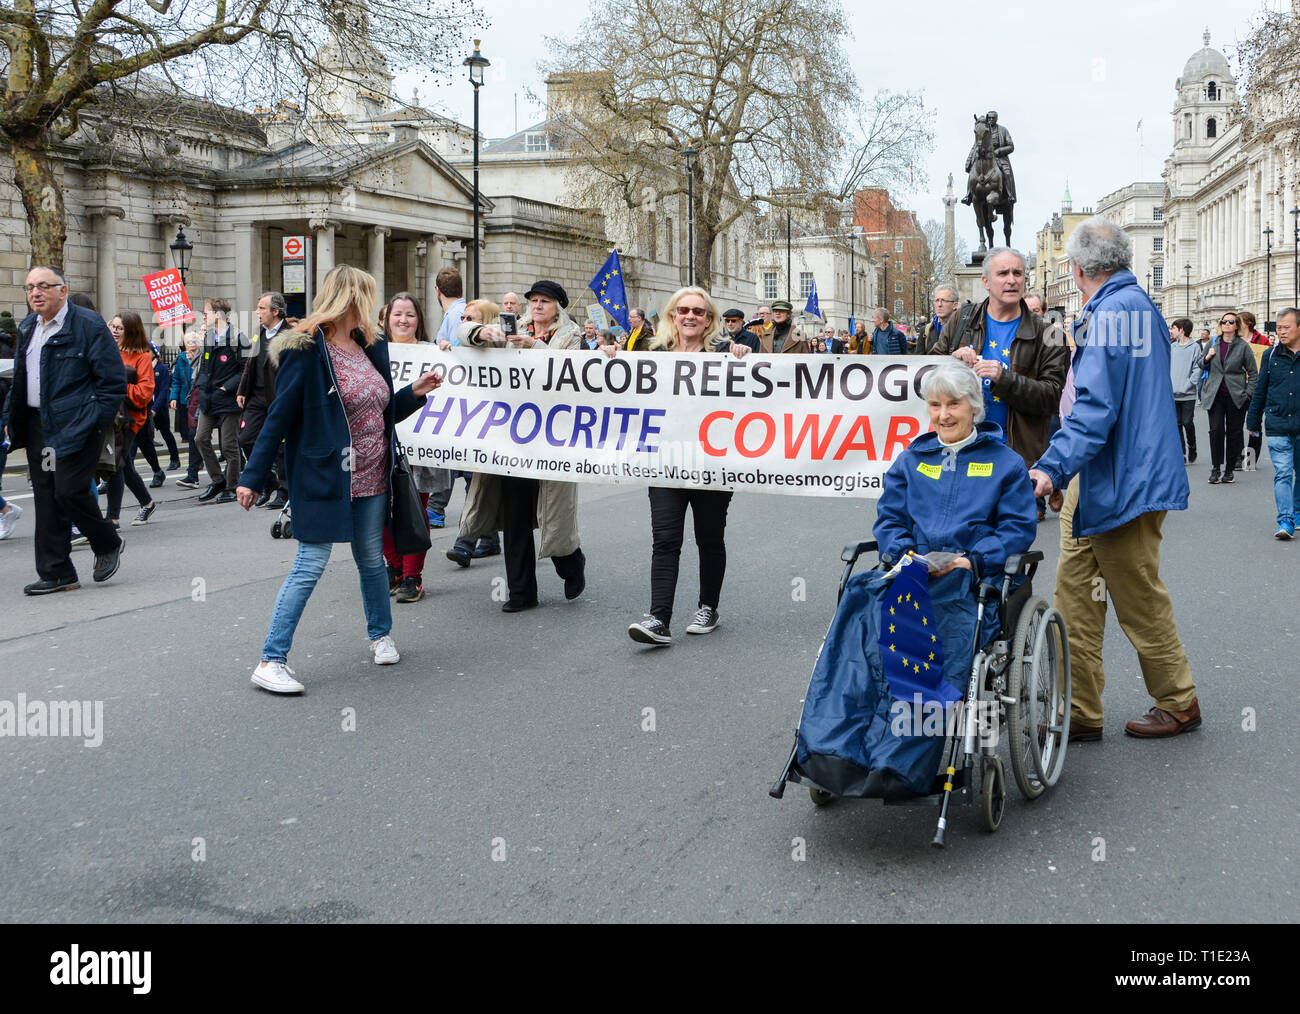 Londres, Angleterre, Royaume-Uni. 23 mars 2019. Vote du peuple contre la marche de protestation contre le Brexit à Whitehall - Jacob Rees-Mogg, hypocrite, bannière de protestation de Coward Banque D'Images